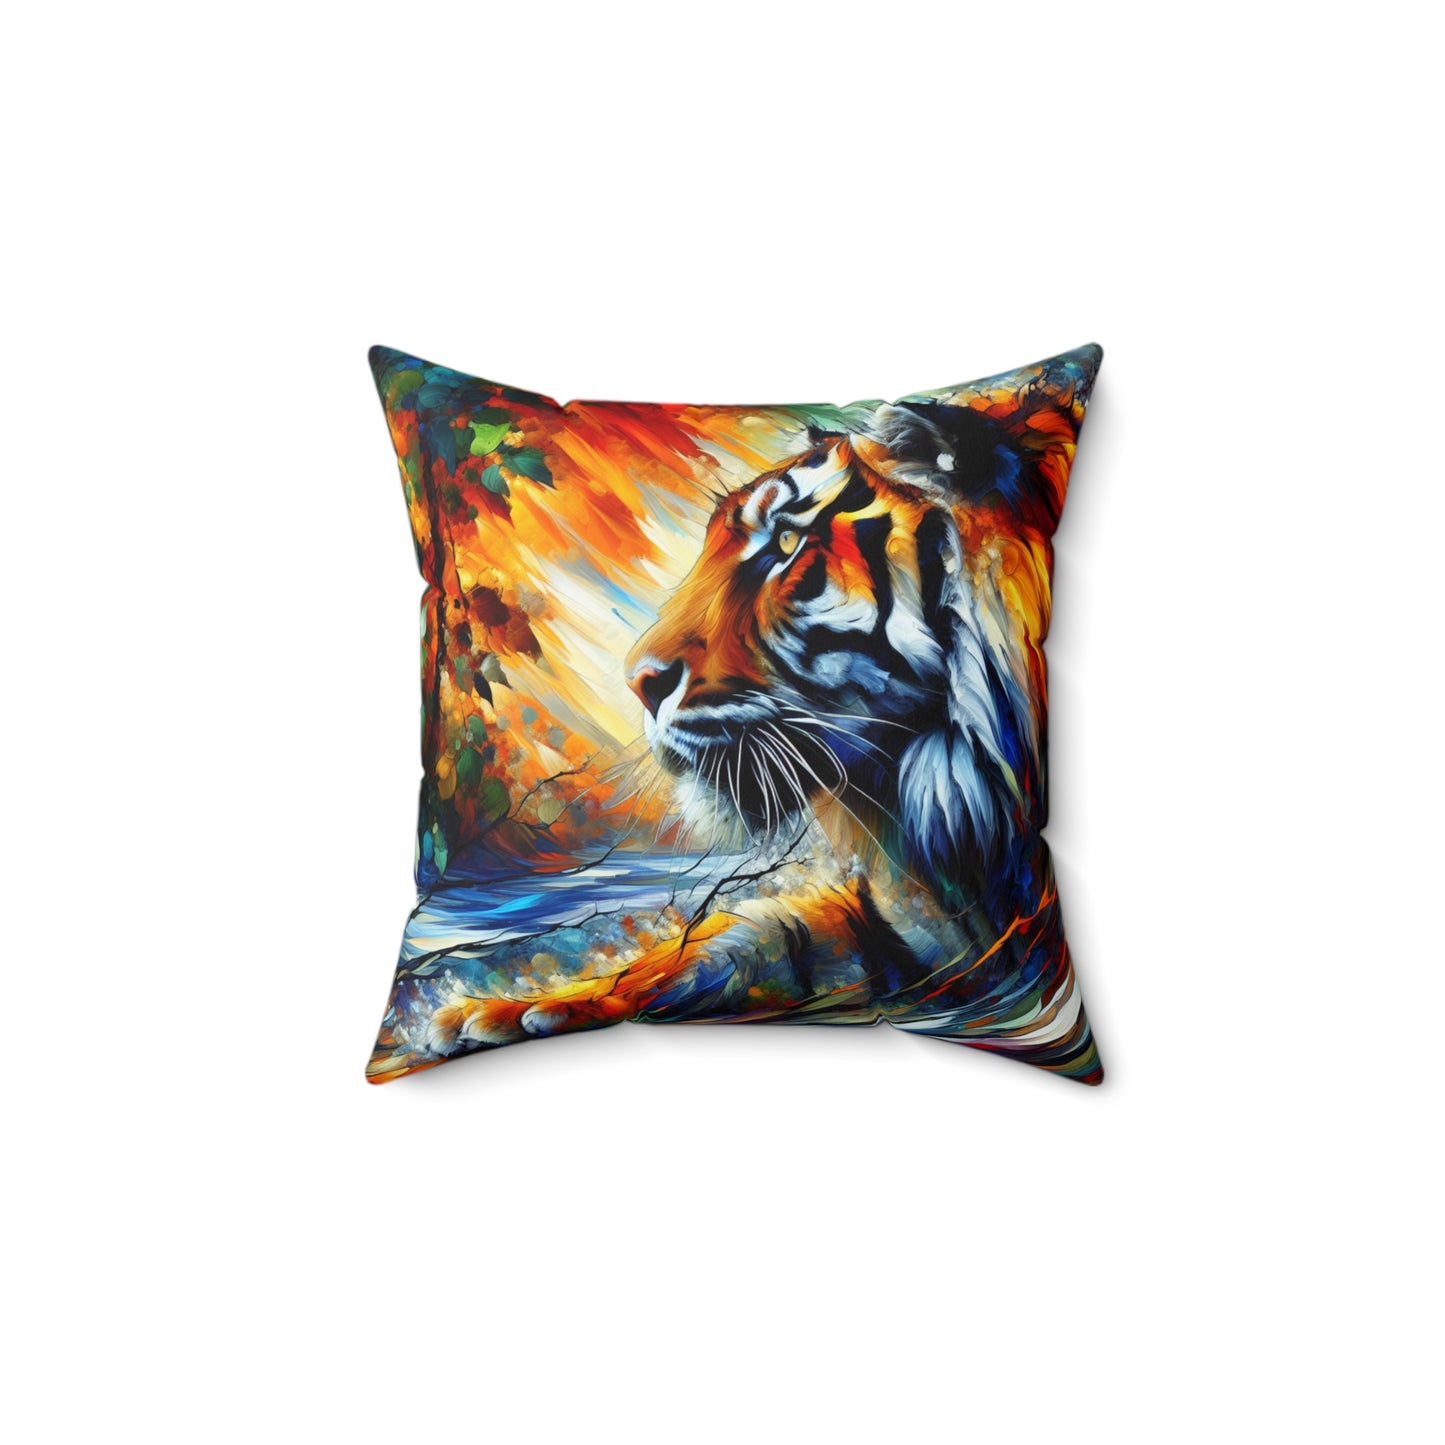 Tiger Focus - Square Pillows